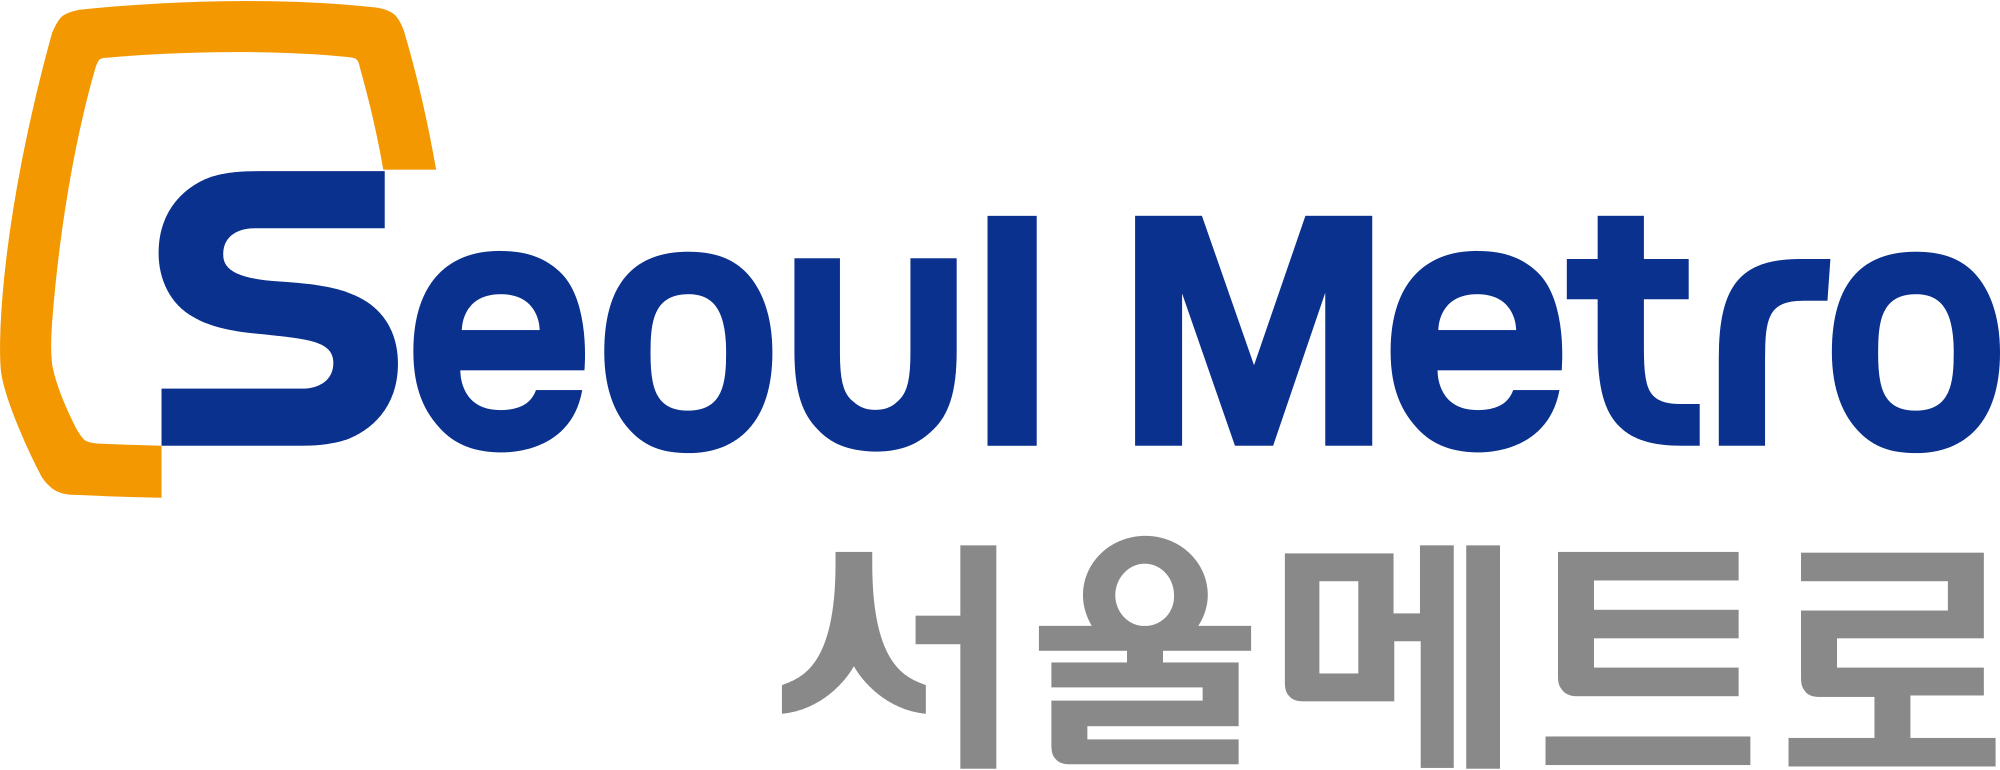 Seoul Metro Logo - Seoul Metro 로고 (2000x770), Png Download